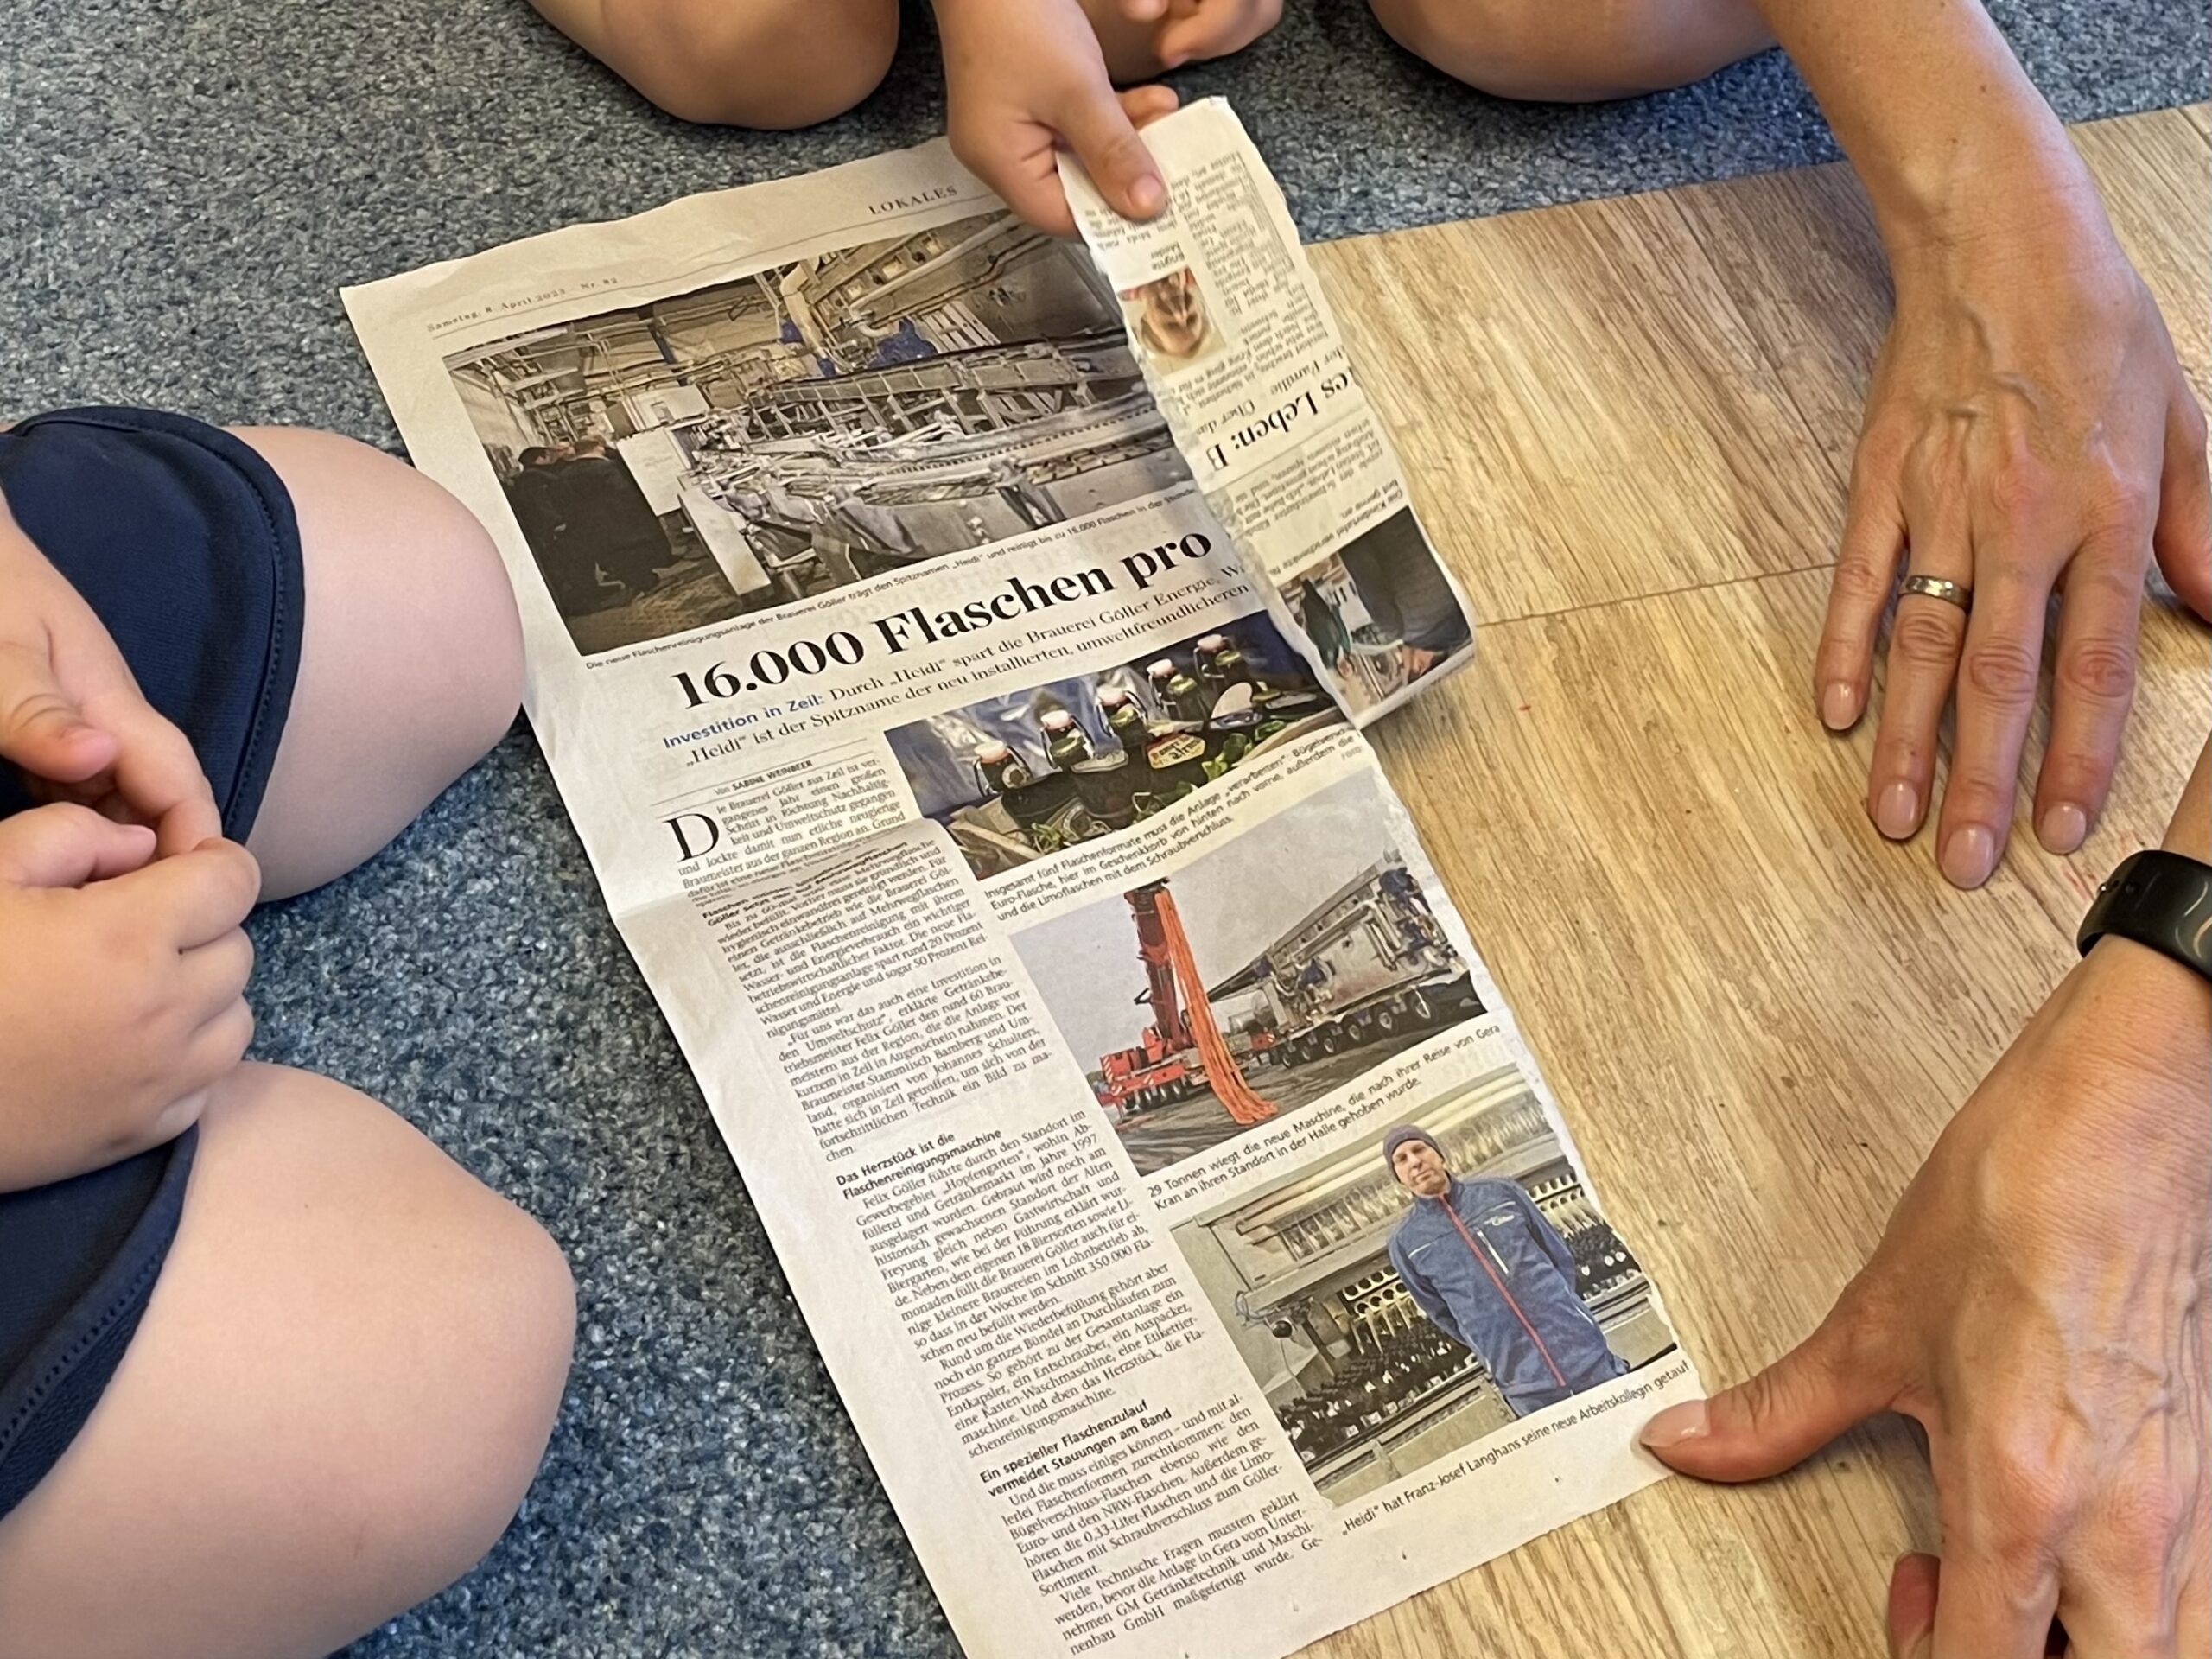 Bild zum Schritt 2 für das Bastel- und DIY-Abenteuer für Kinder: 'Als nächstes wird ein großes Zeitungsblatt in Streifen gerissen oder...'